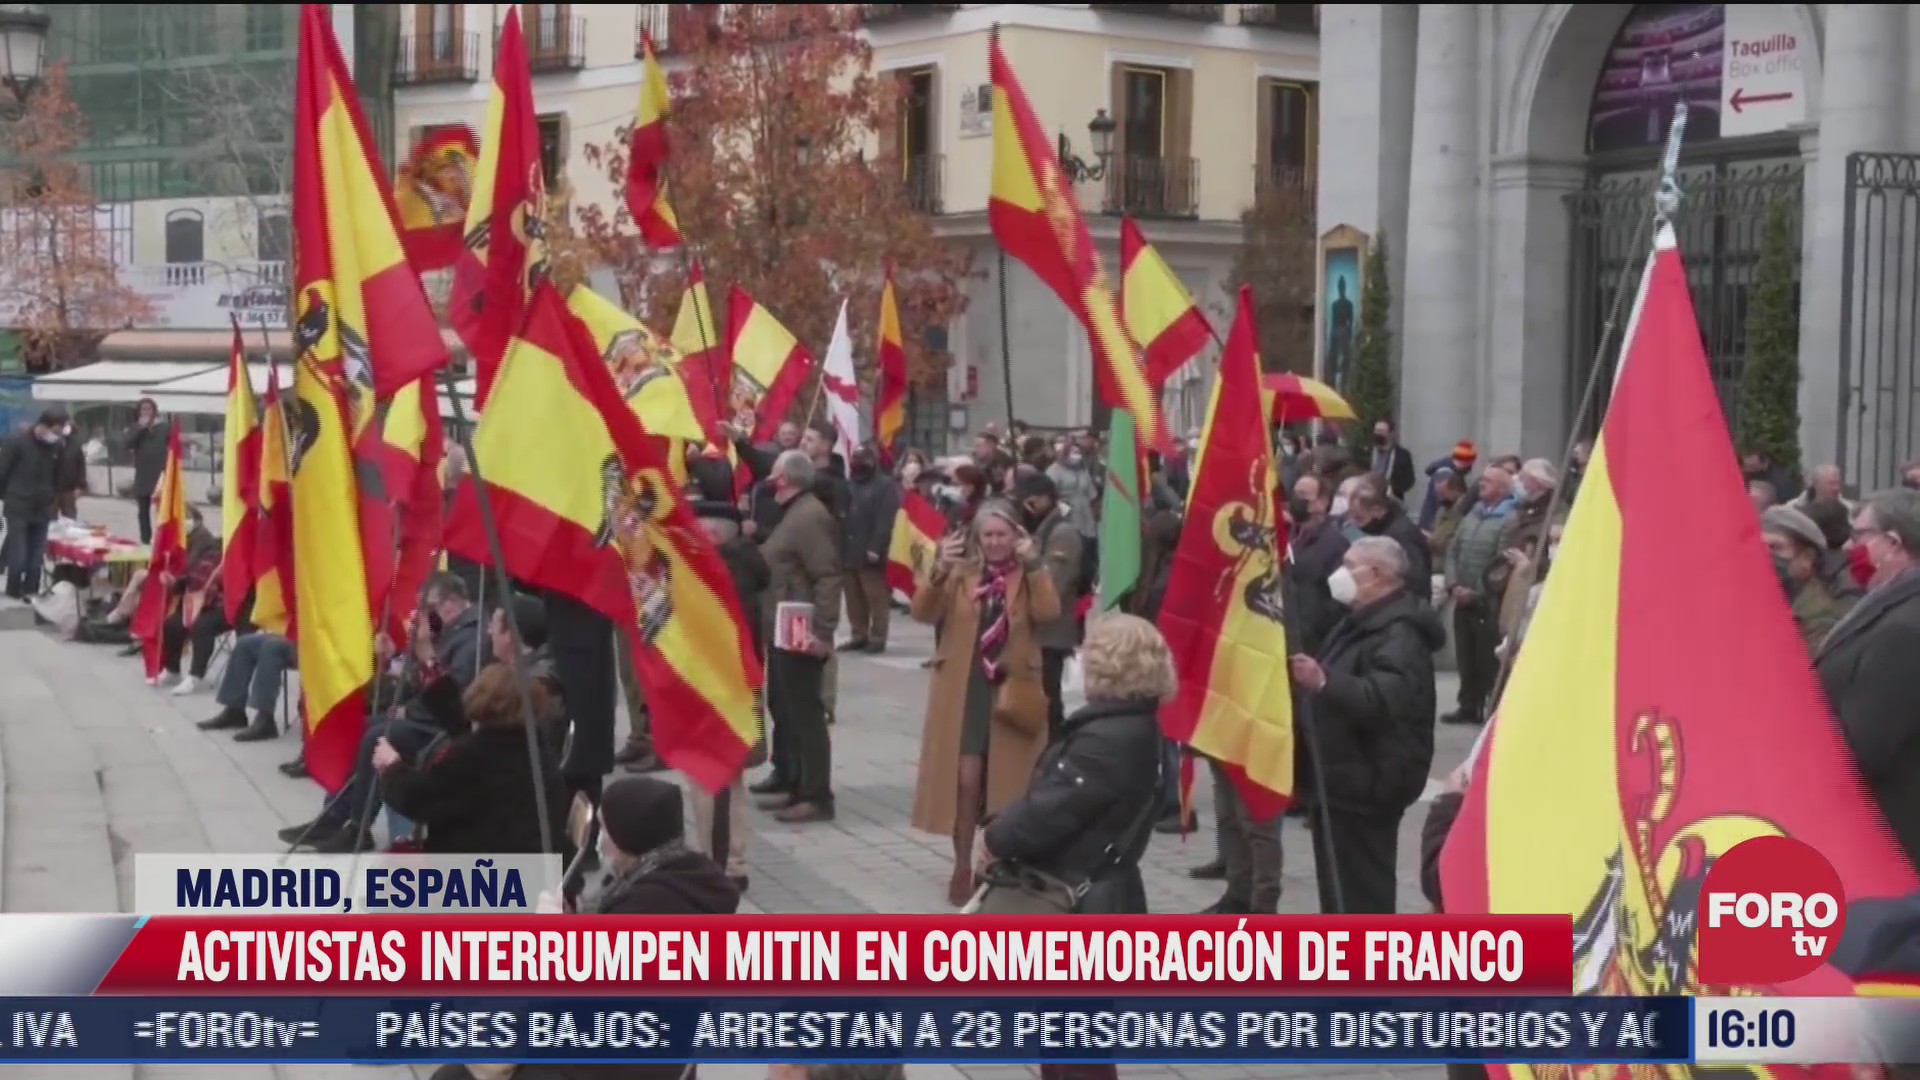 mujeres en topless interrumpen conmemoracion a franco en espana